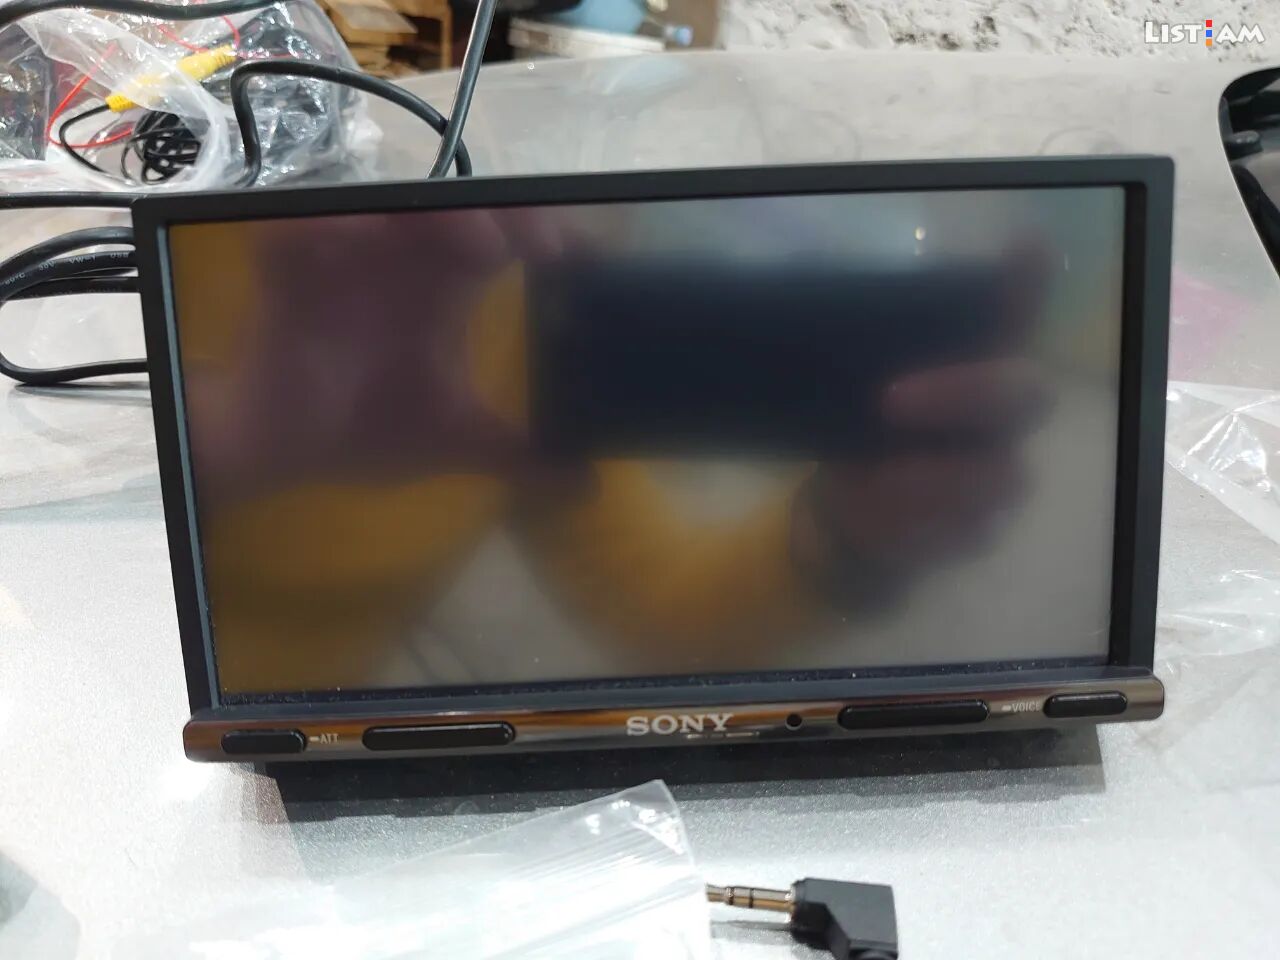 Sony xav-ax3200